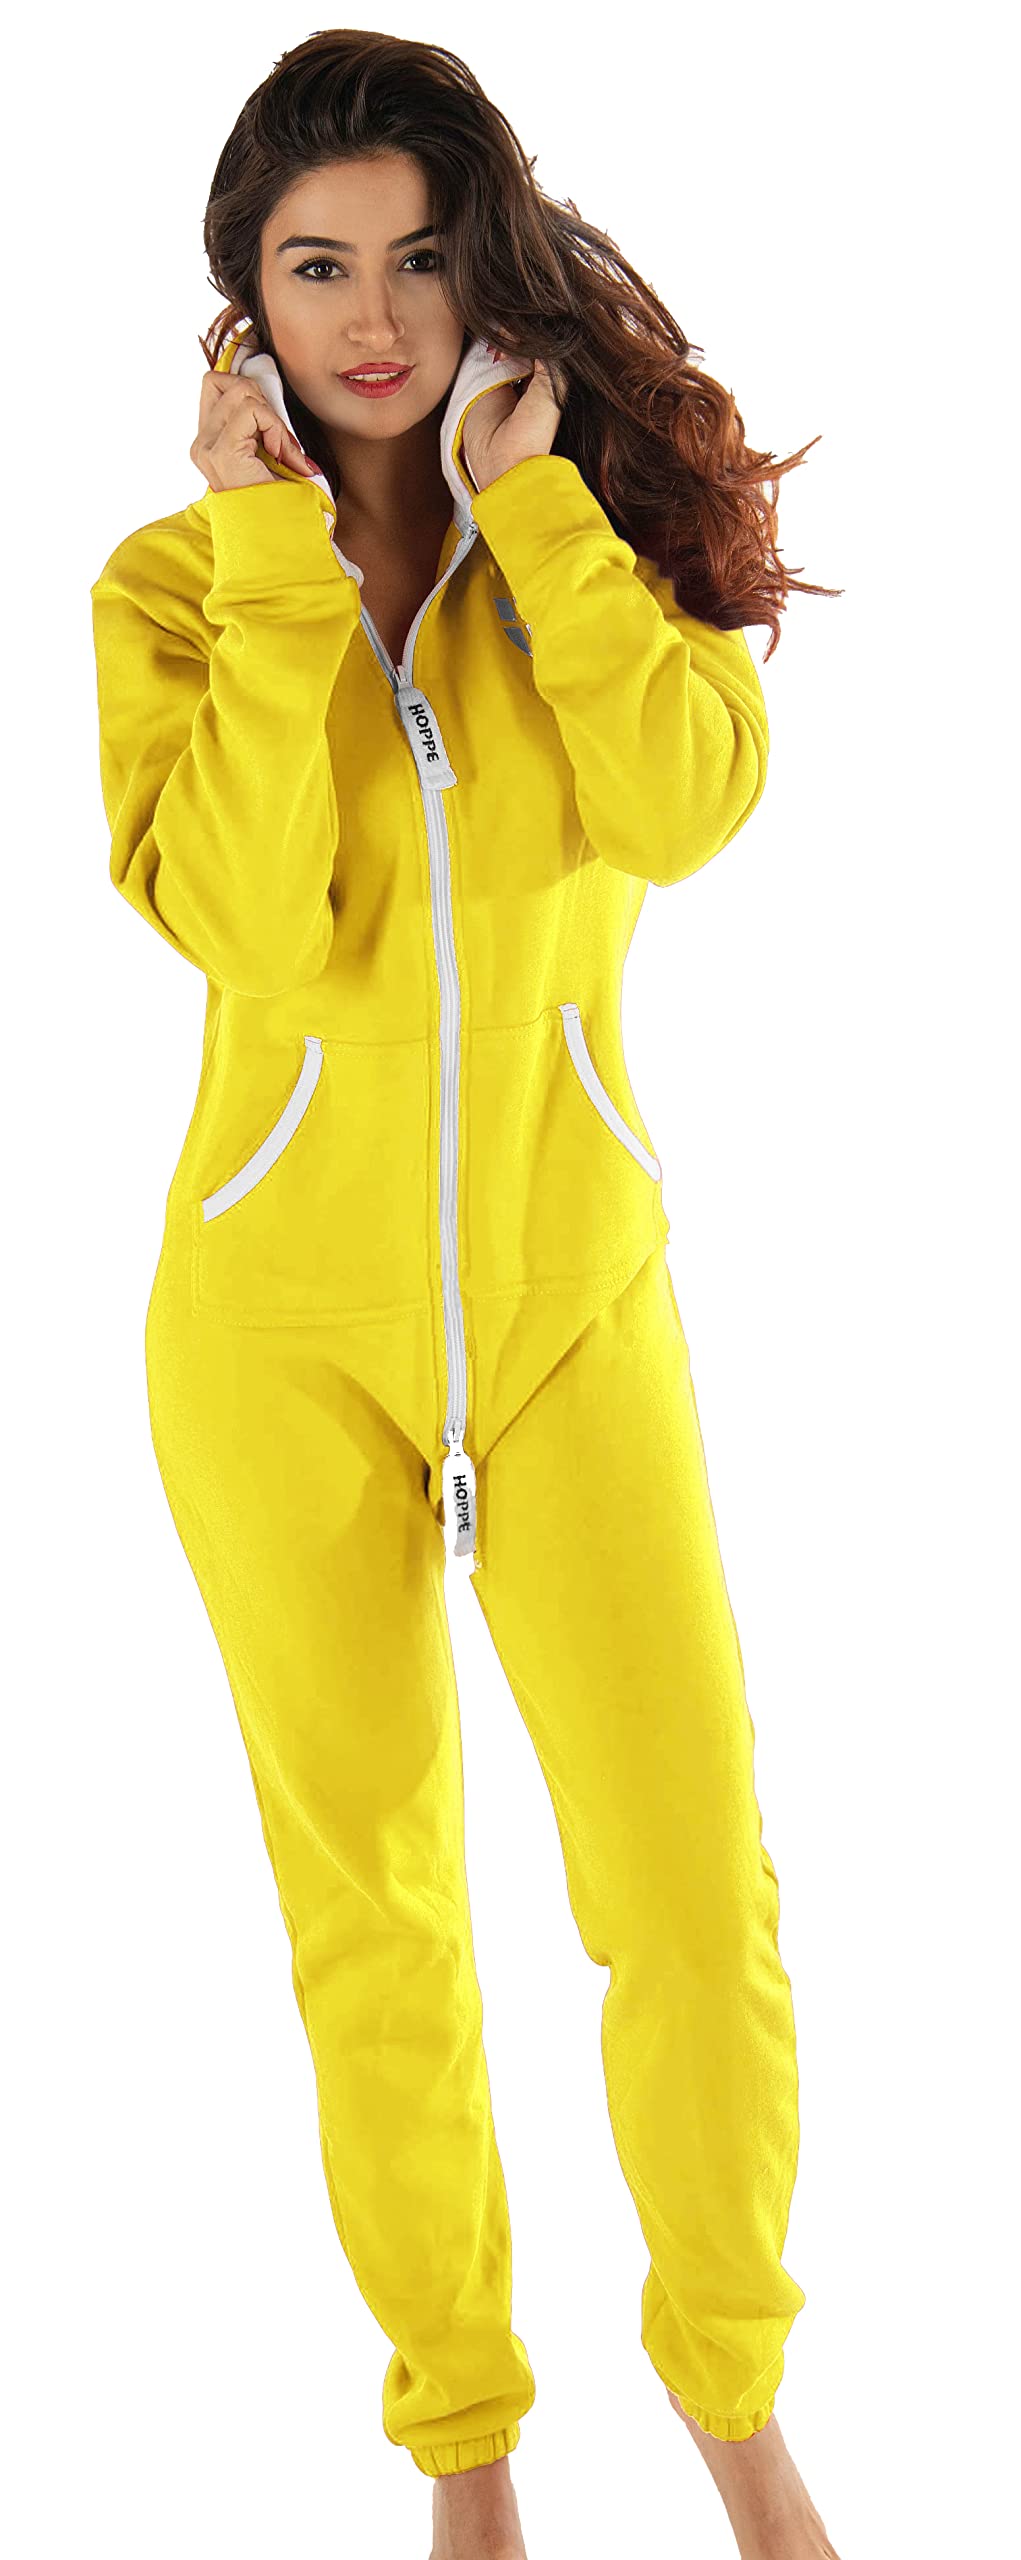 Gennadi Hoppe Damen Jumpsuit Suit Relaxpiece Einteiler Overall Anzug - Slim FIT, H6147 gelb L, gelb (Yellow), L